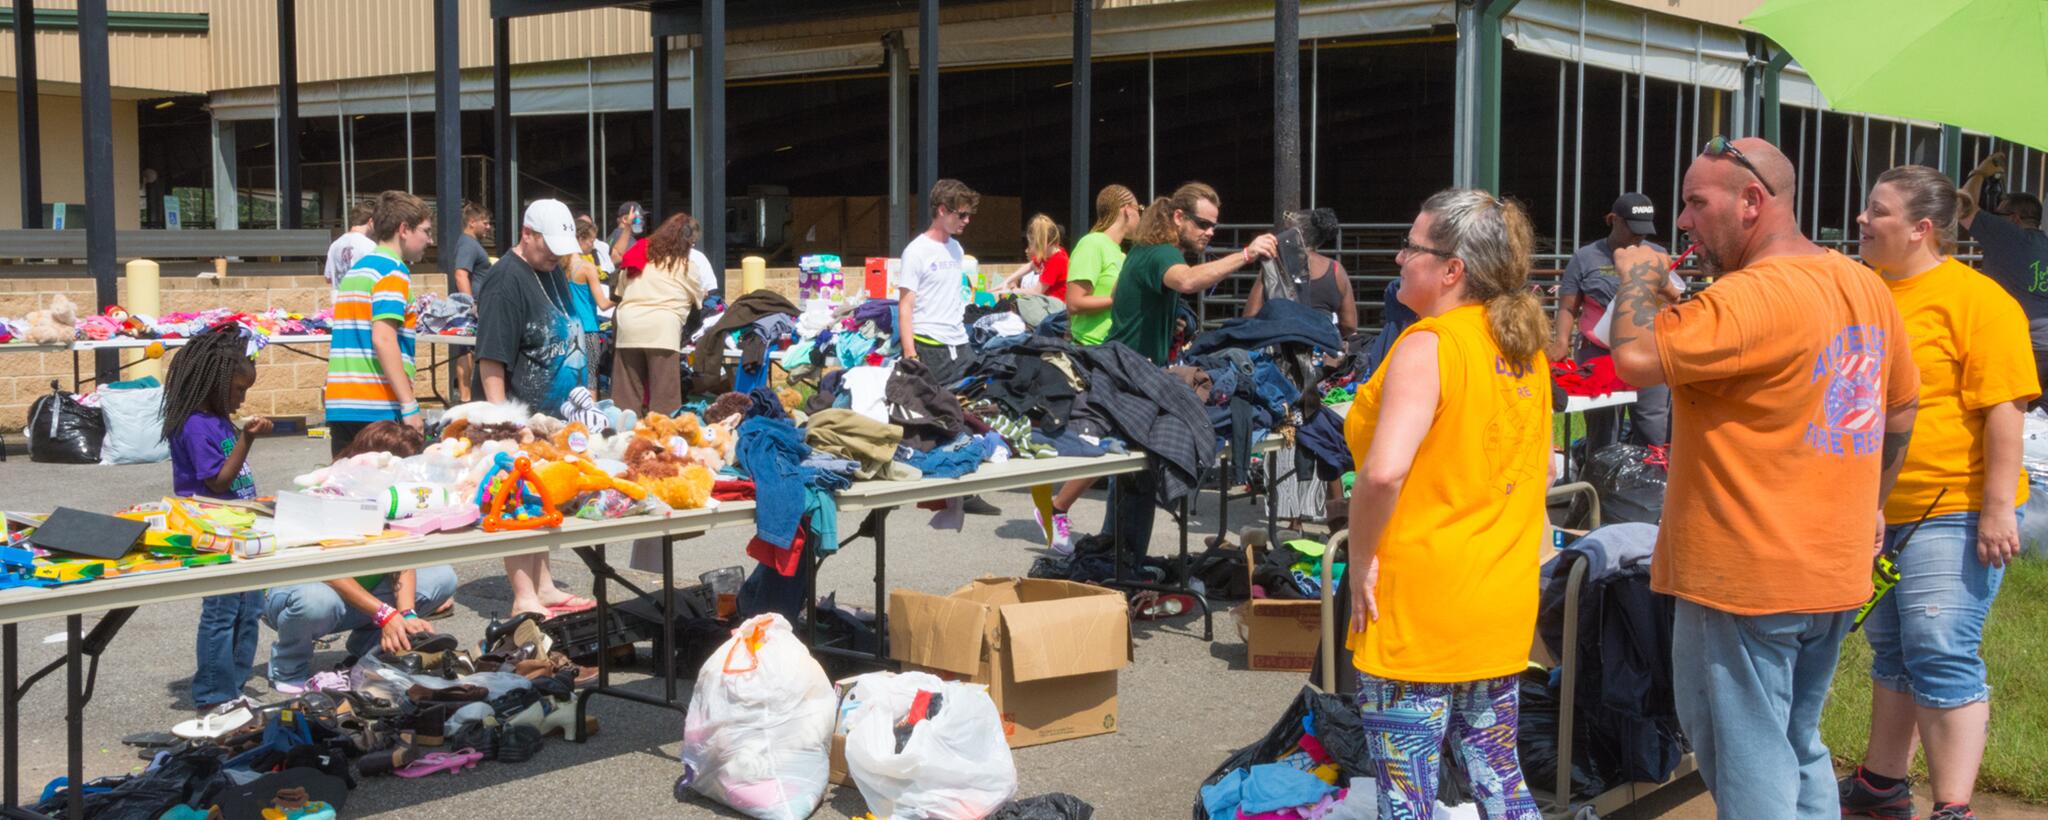 Voluntarios y organizaciones trajeron ropa y otras necesidades para que las personas las lleven según sea necesario